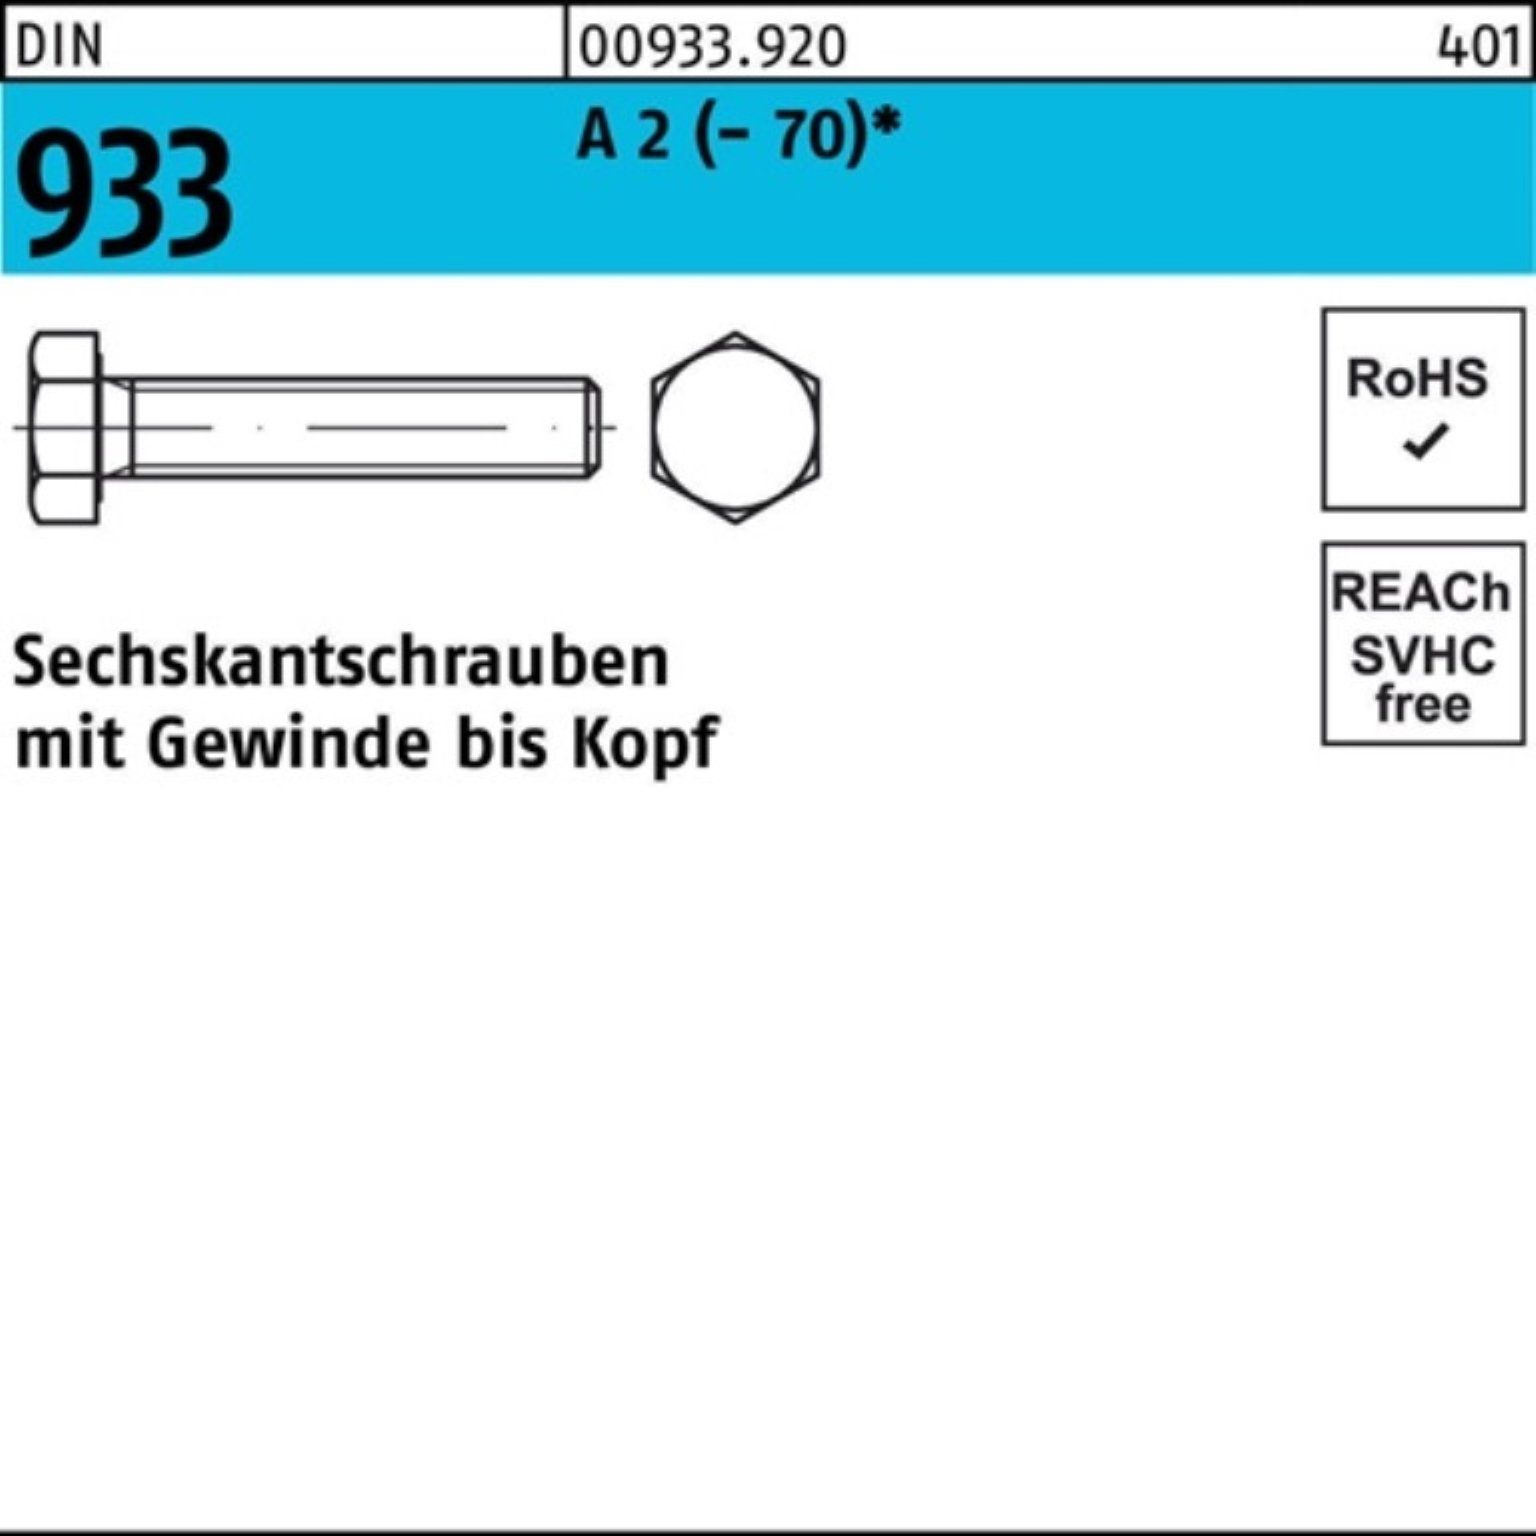 Reyher Sechskantschraube 933 M24x 50 (70) A Pack 20 Stück VG 2 D Sechskantschraube DIN 100er